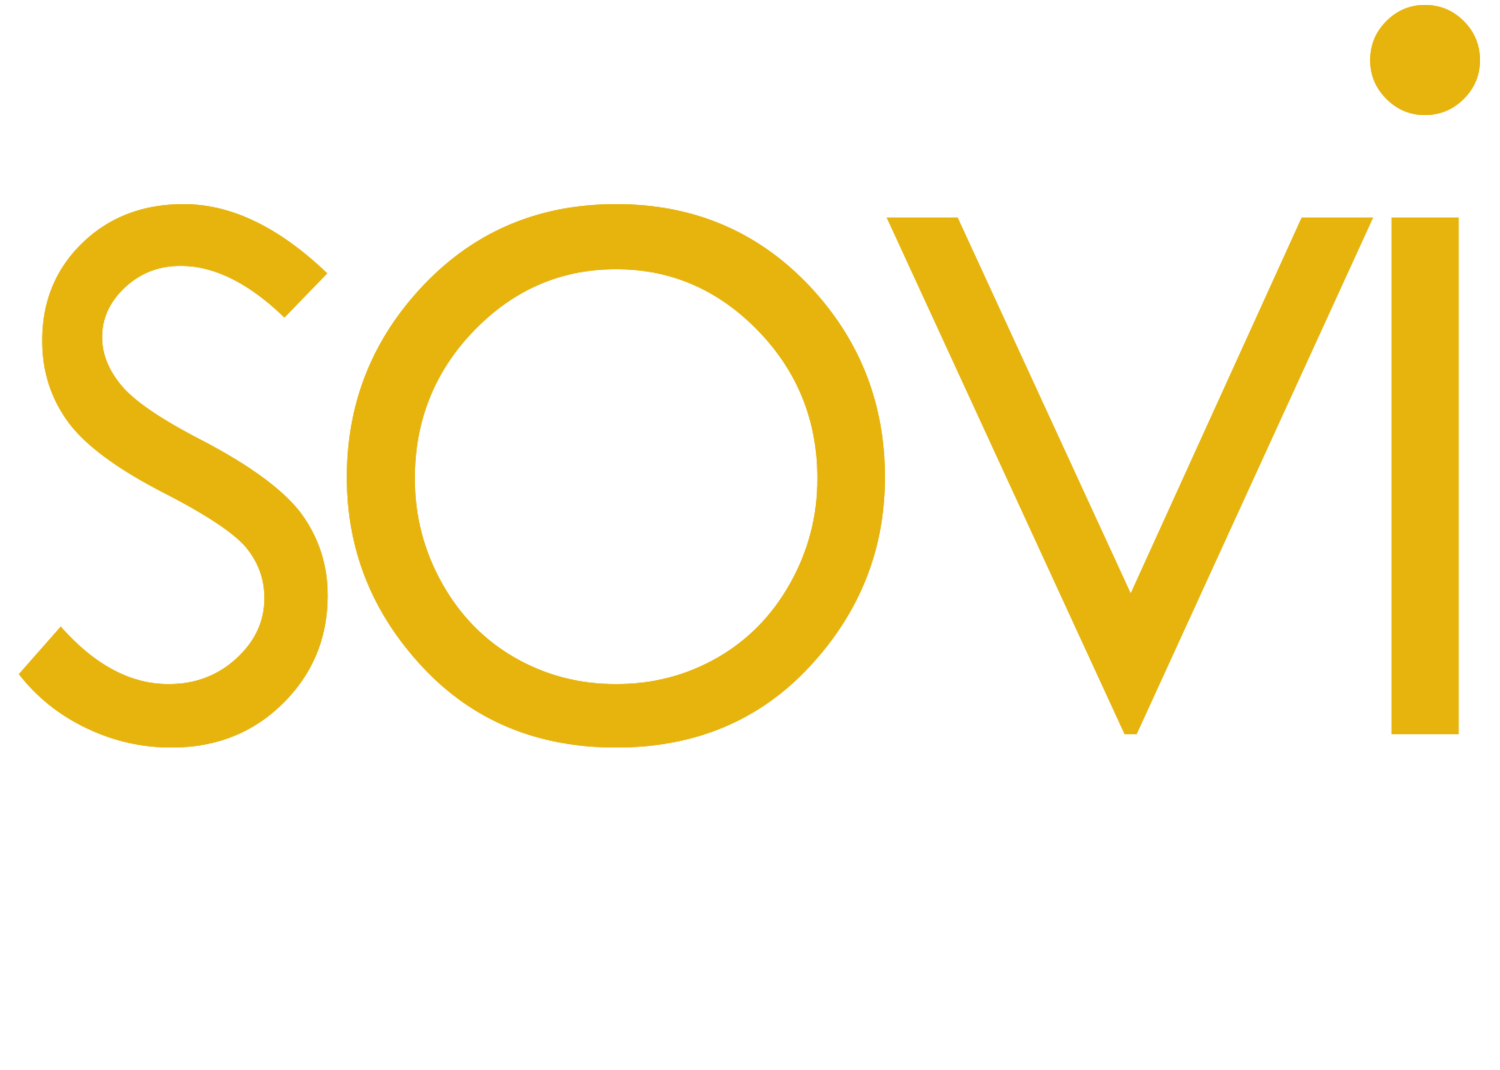 Sovi Landscape Architecture